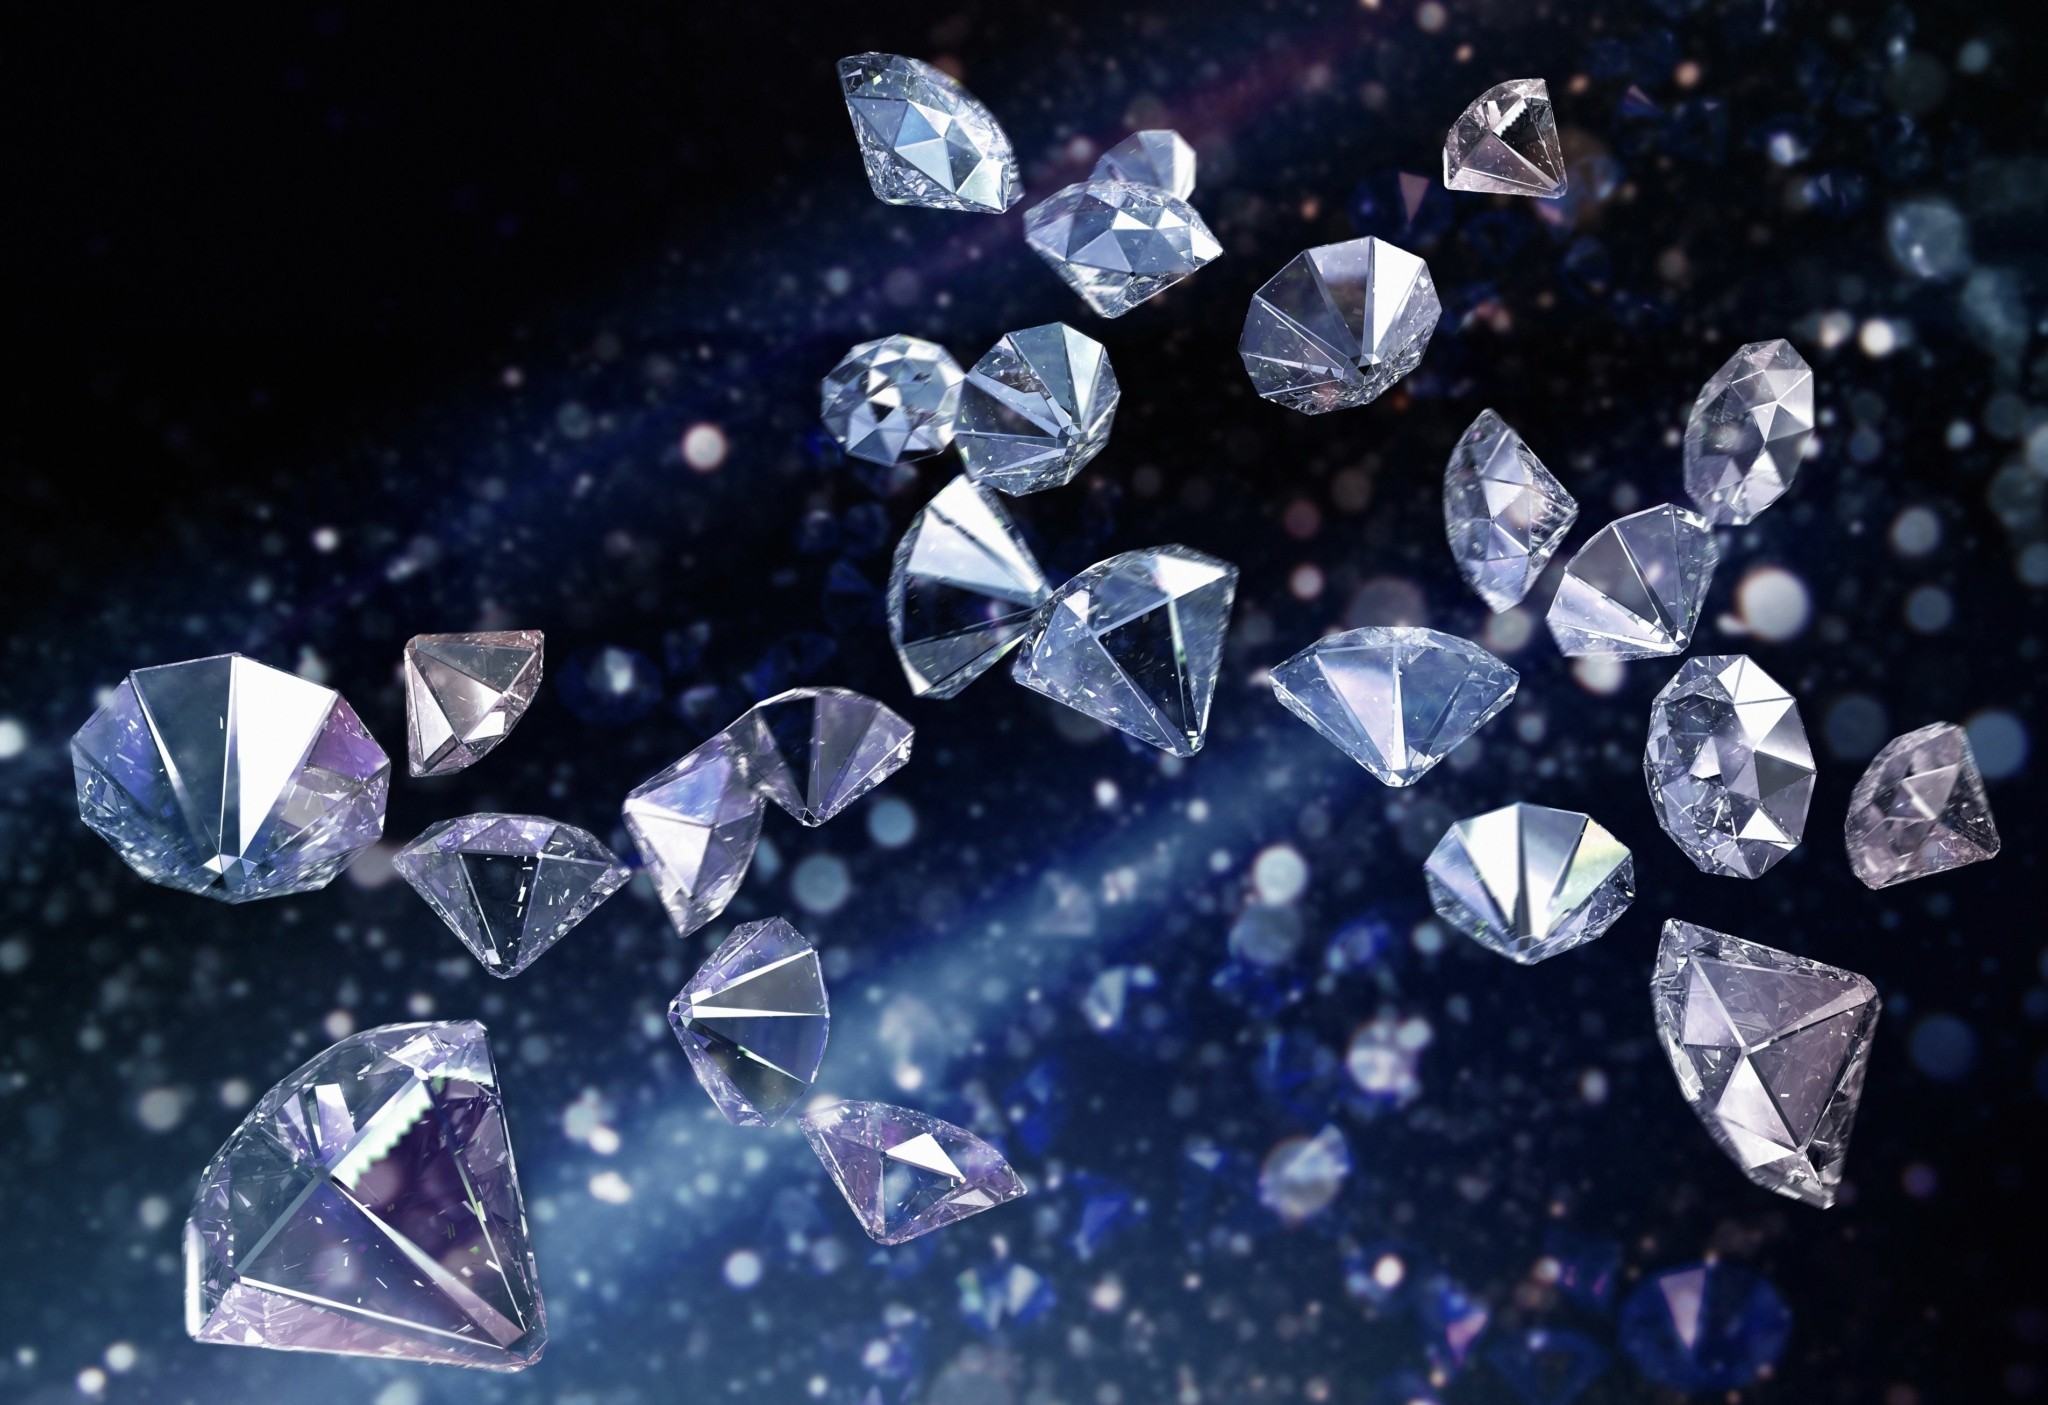 Τα διαμάντια δεν είναι πια παντοτινά – Σημαντική η μείωση στη ζήτηση και τις τιμές